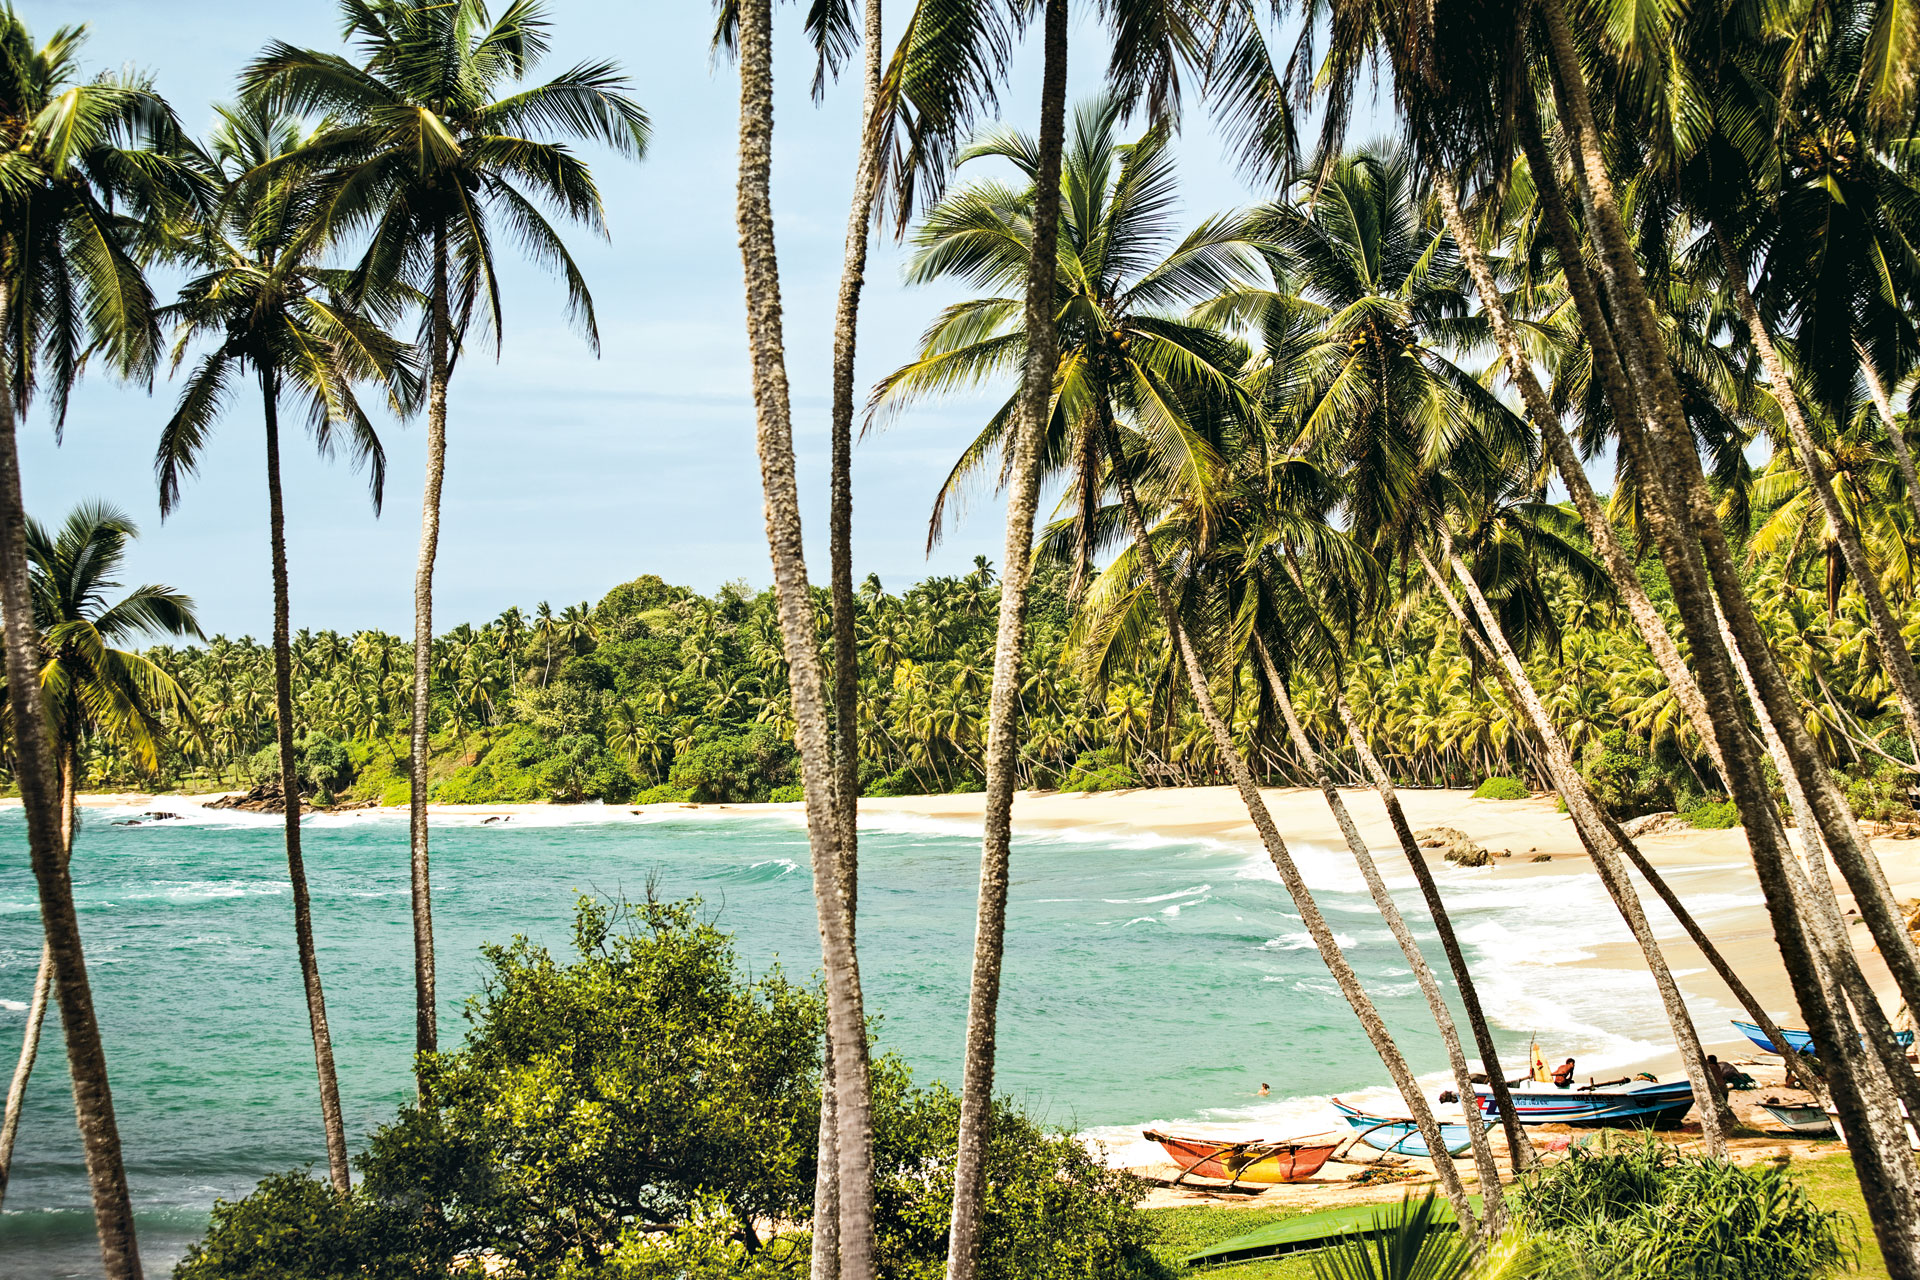 Где находится шри ланка океан. Тангалле Шри Ланка. Пляж Аманвелла Шри Ланка. Остров Шри-Ланка в индийском океане. Шри Ланка туризм.